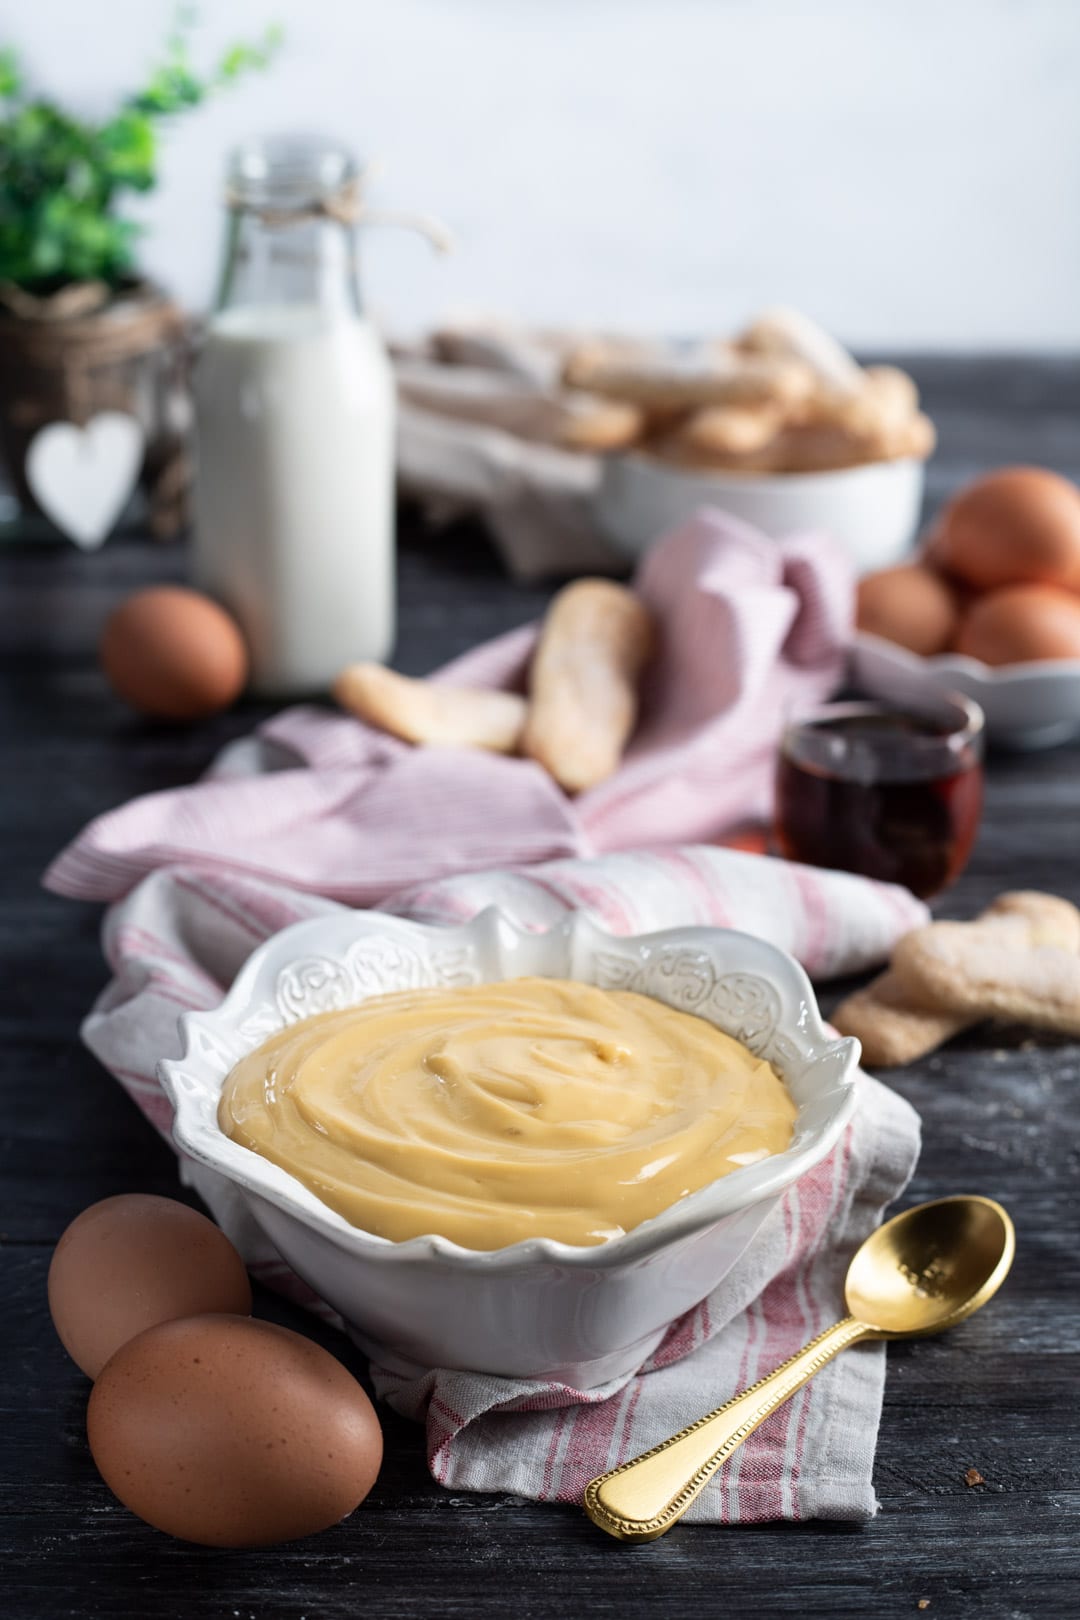 Crema pasticciera allo zabaione con uova e marsala al cucchiaio o farcia per farcire dolcii, torte, colomba pasquale.